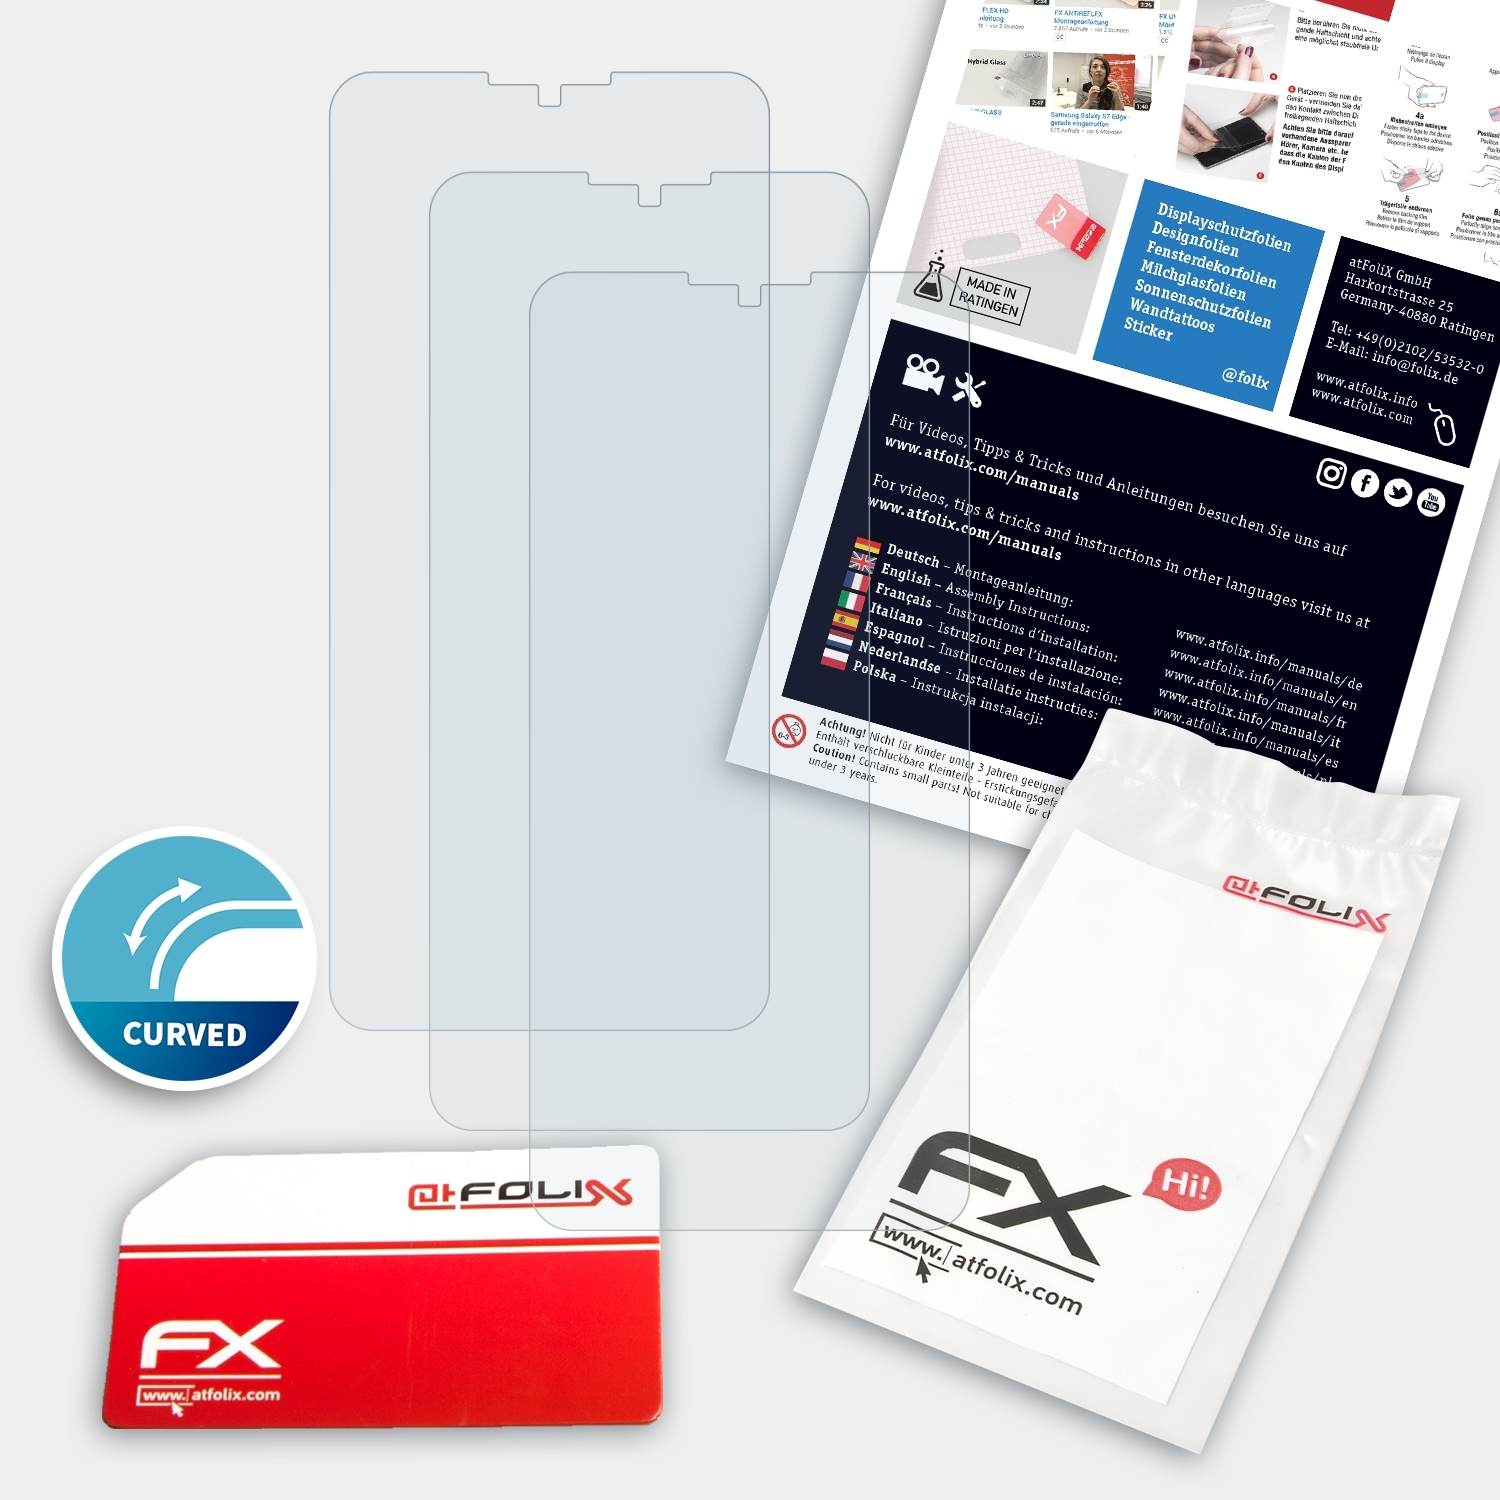 5G) ZTE Pro FX-ActiFleX Displayschutz(für 3x 10 ATFOLIX Axon